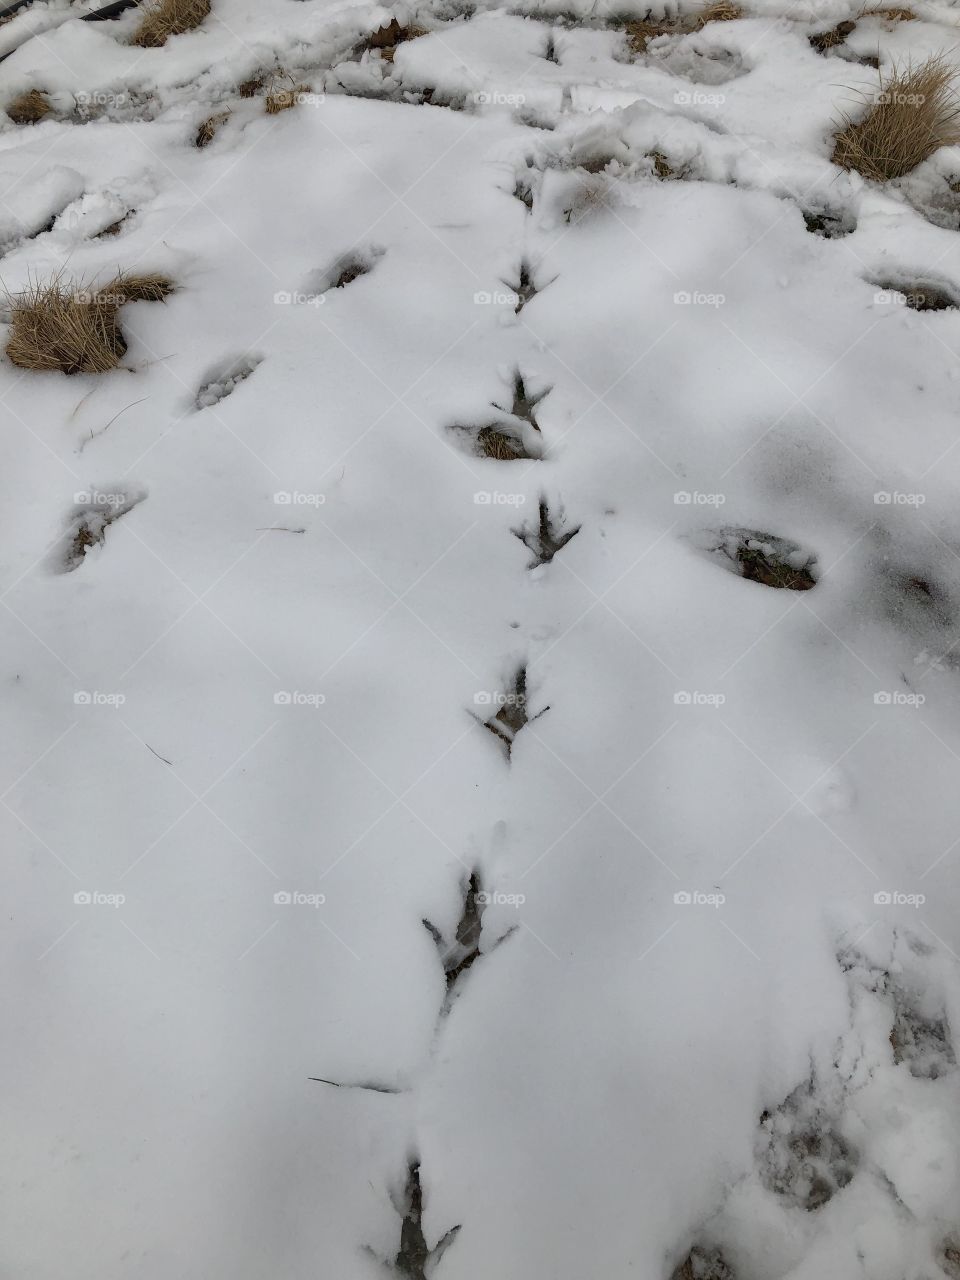 Huge peacock tracks in the freshly-lain Virginia snow